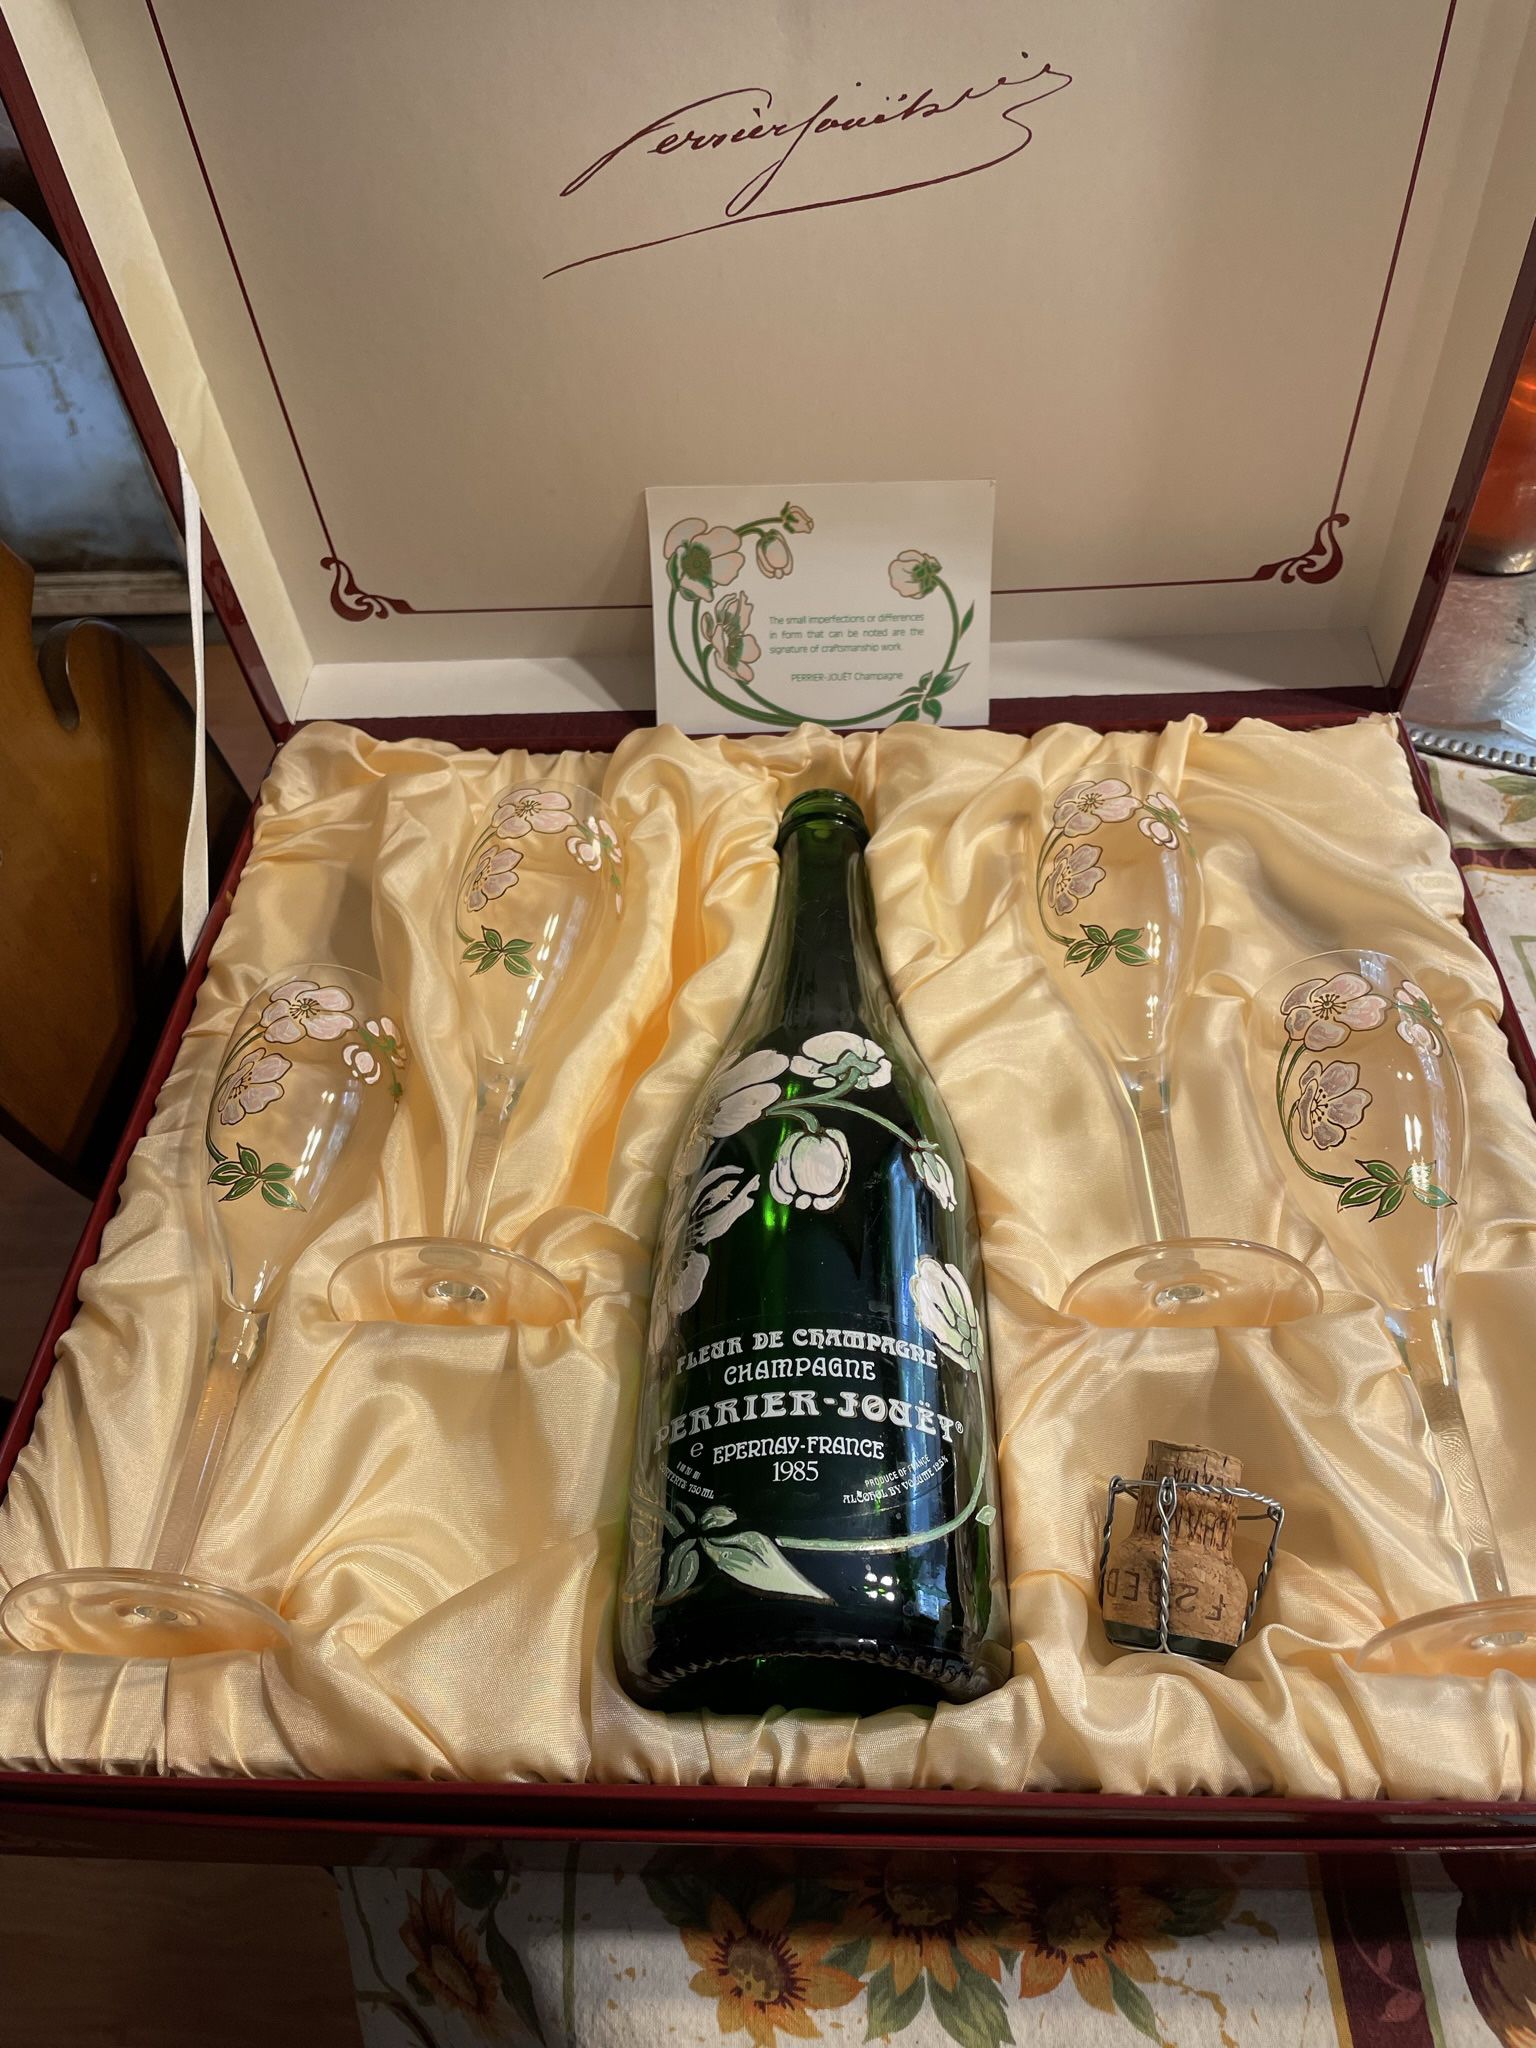 Pierre Jociet Champagne Bottle 